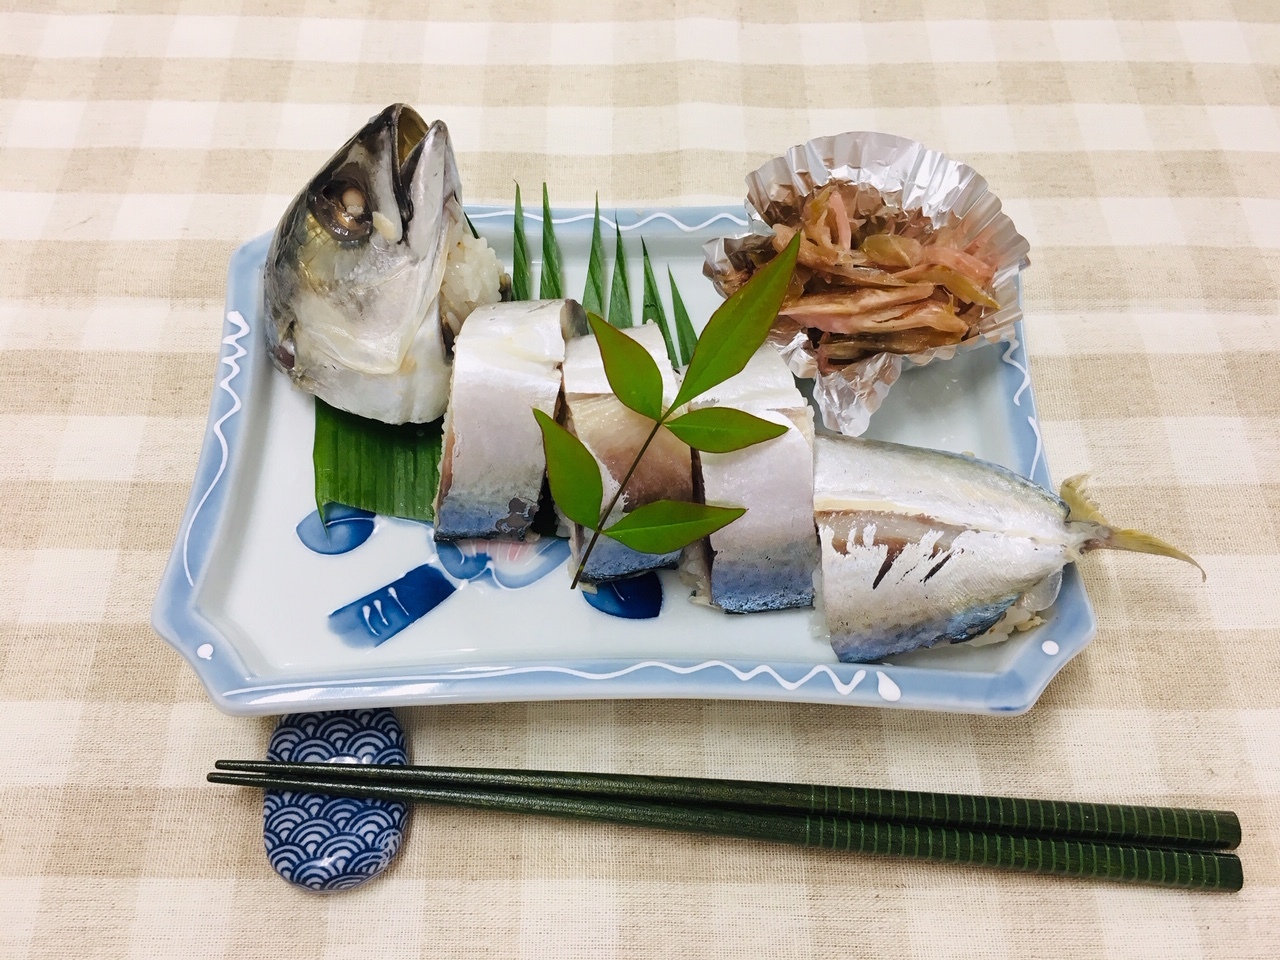 尾頭付きのカットされた鯖寿司が皿に盛り付けられている写真